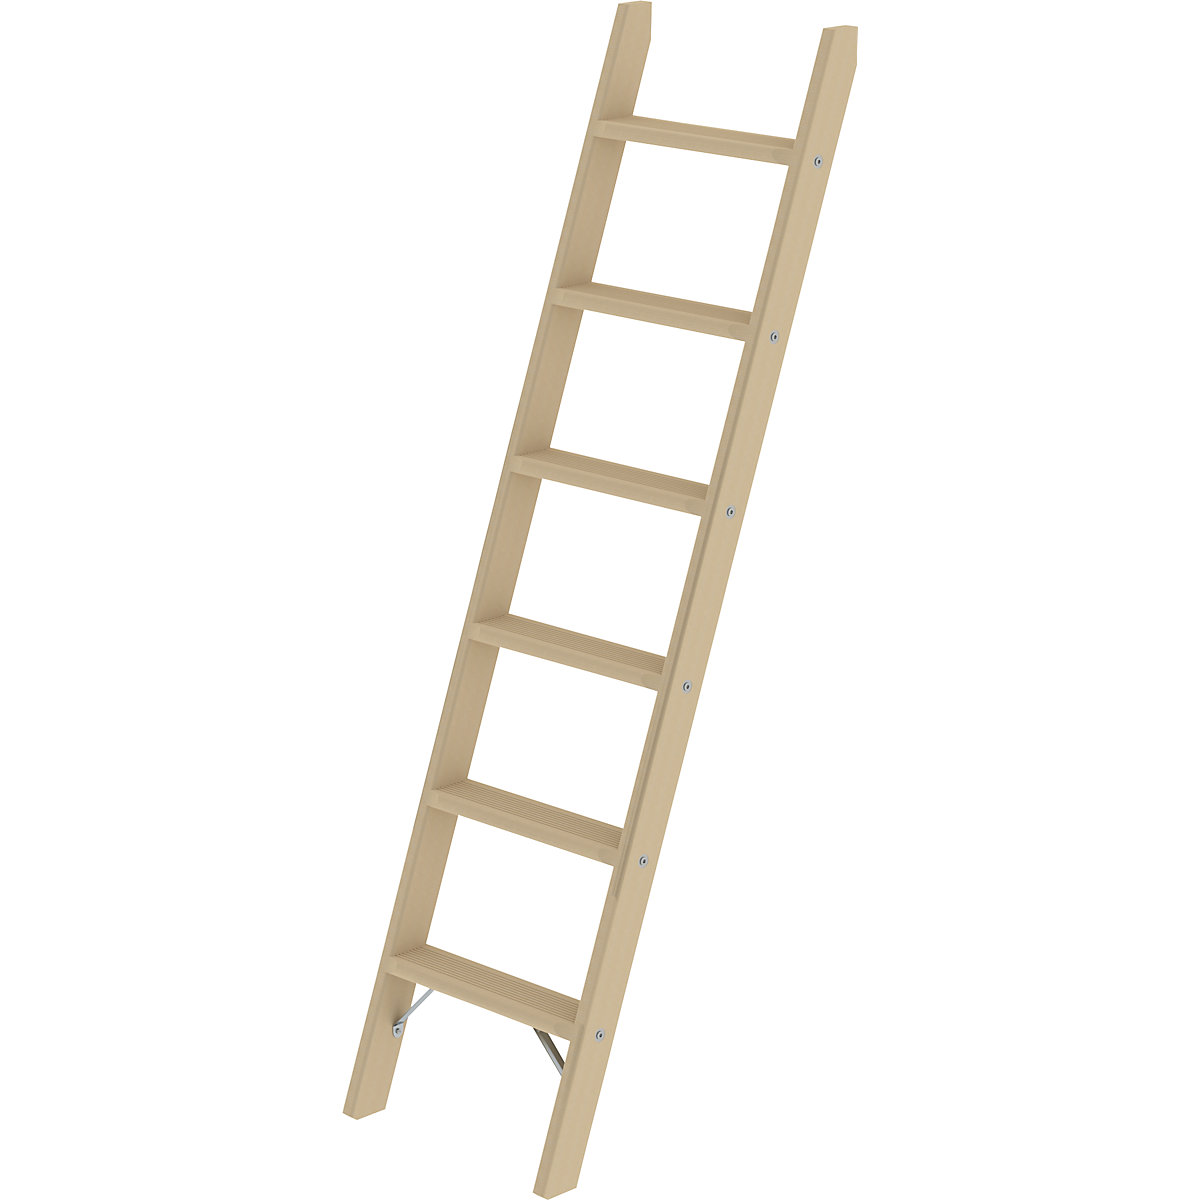 Wooden lean to ladder - MUNK